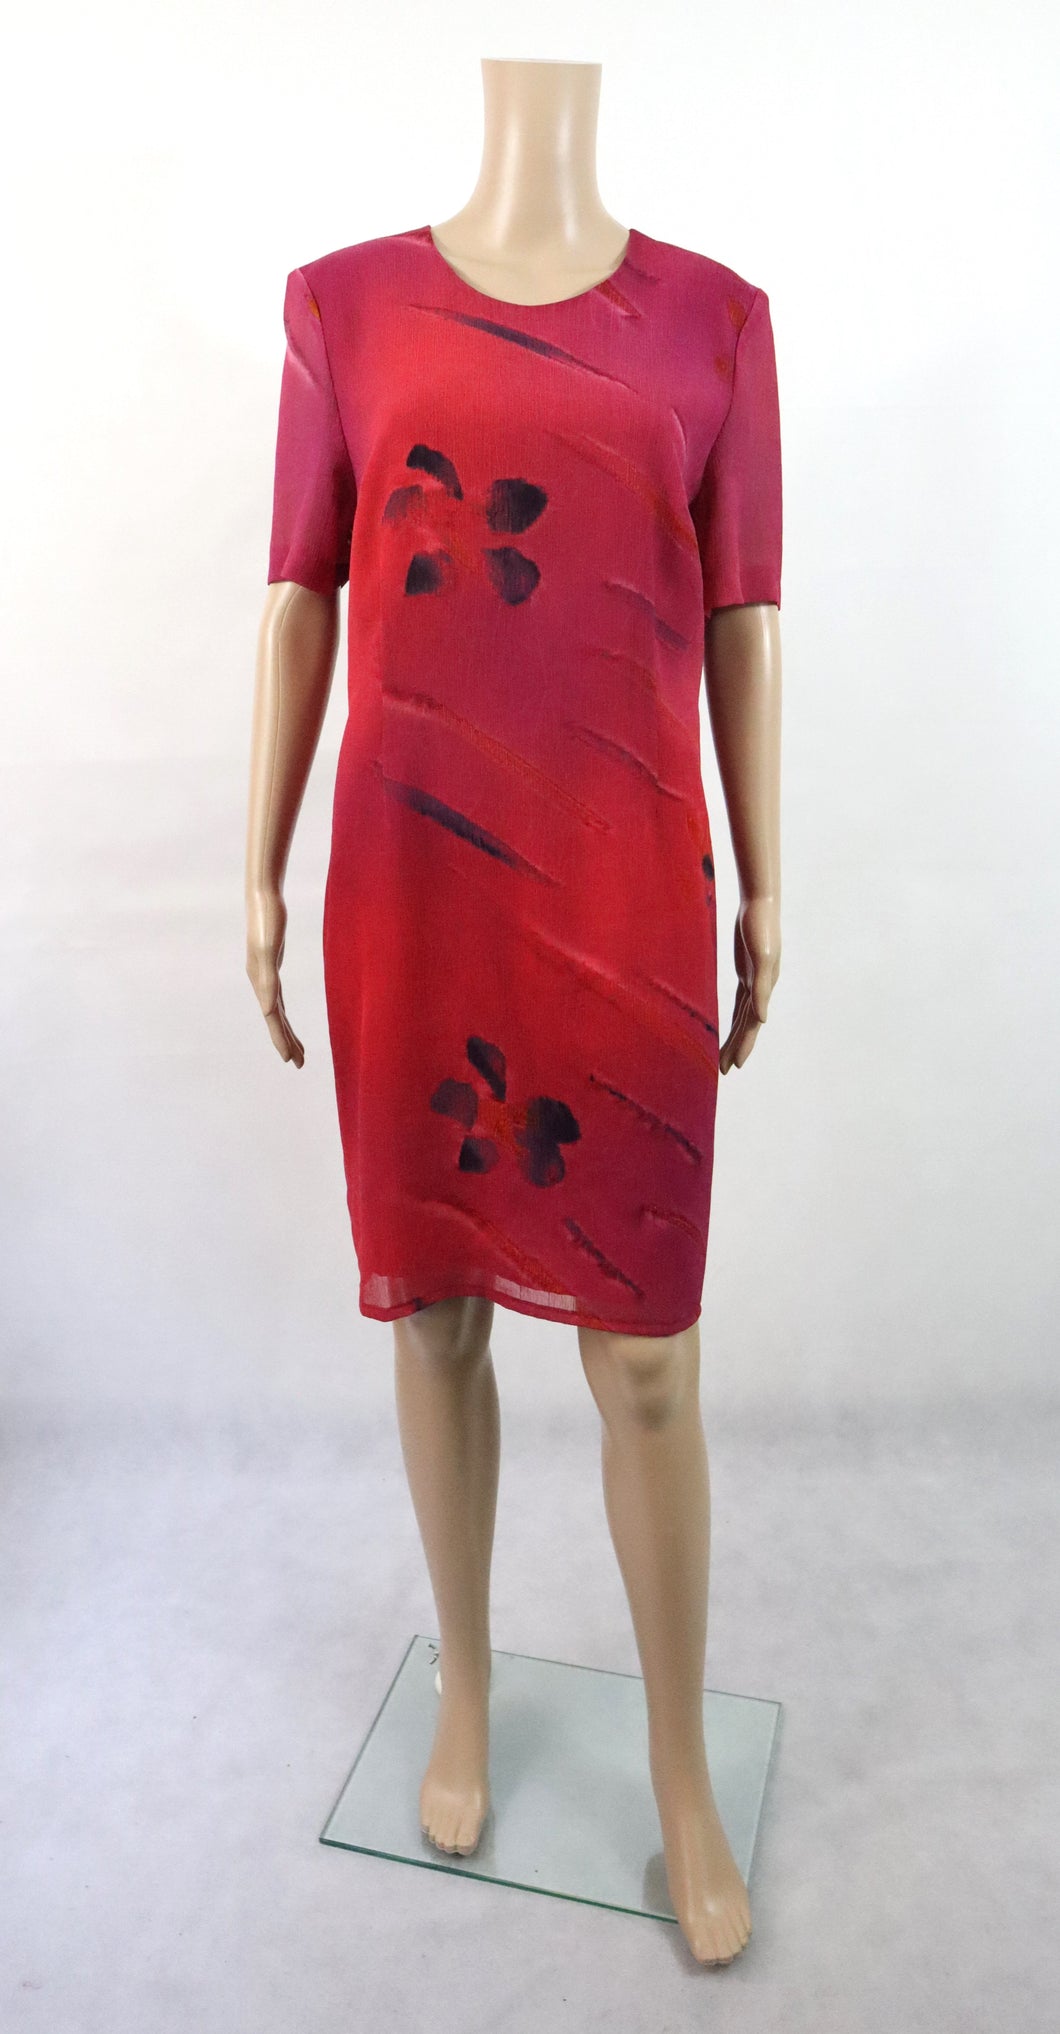 Modelia made in Finland punainen kuviollinen mekko 38